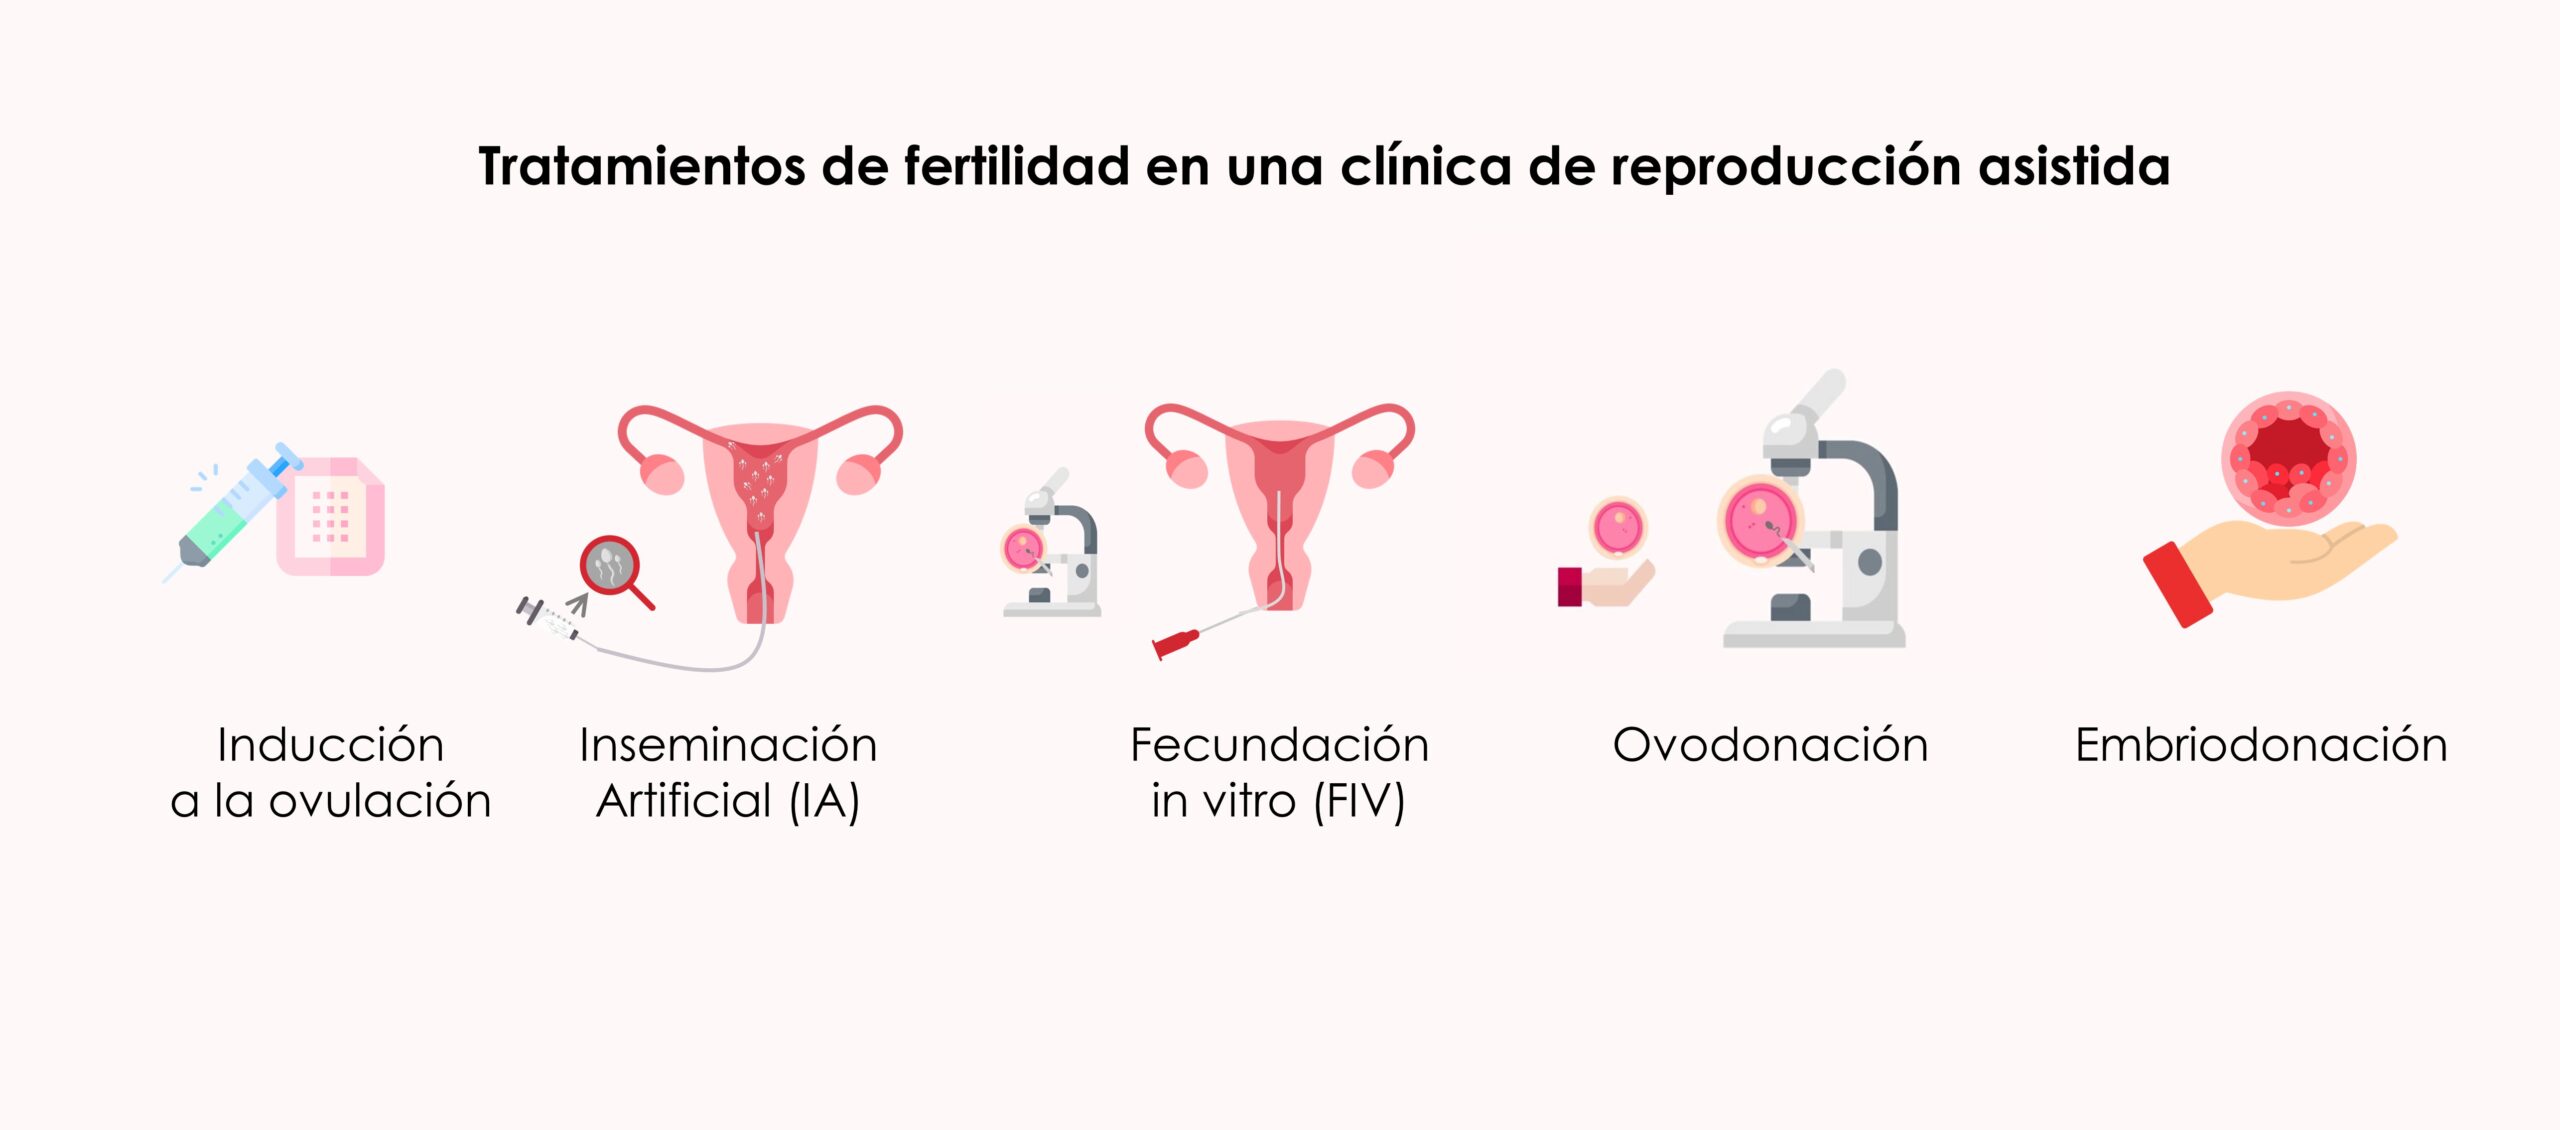 Tratamientos de fertilidad en una clínica de reproducción asistida